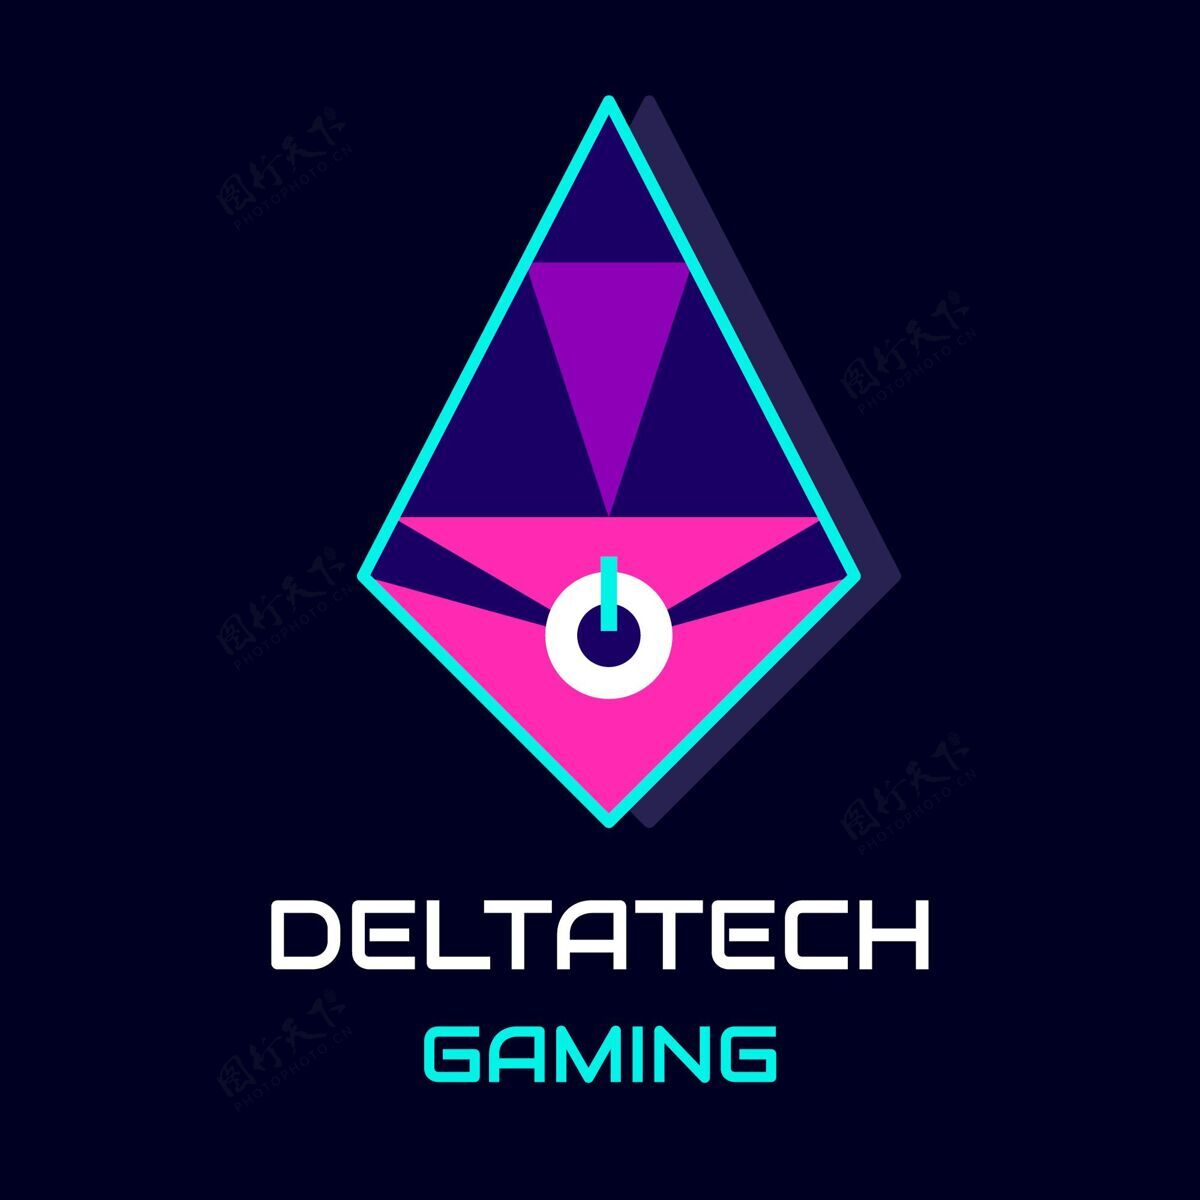 商业未来派deltatech游戏标志品牌标识模板商业标识